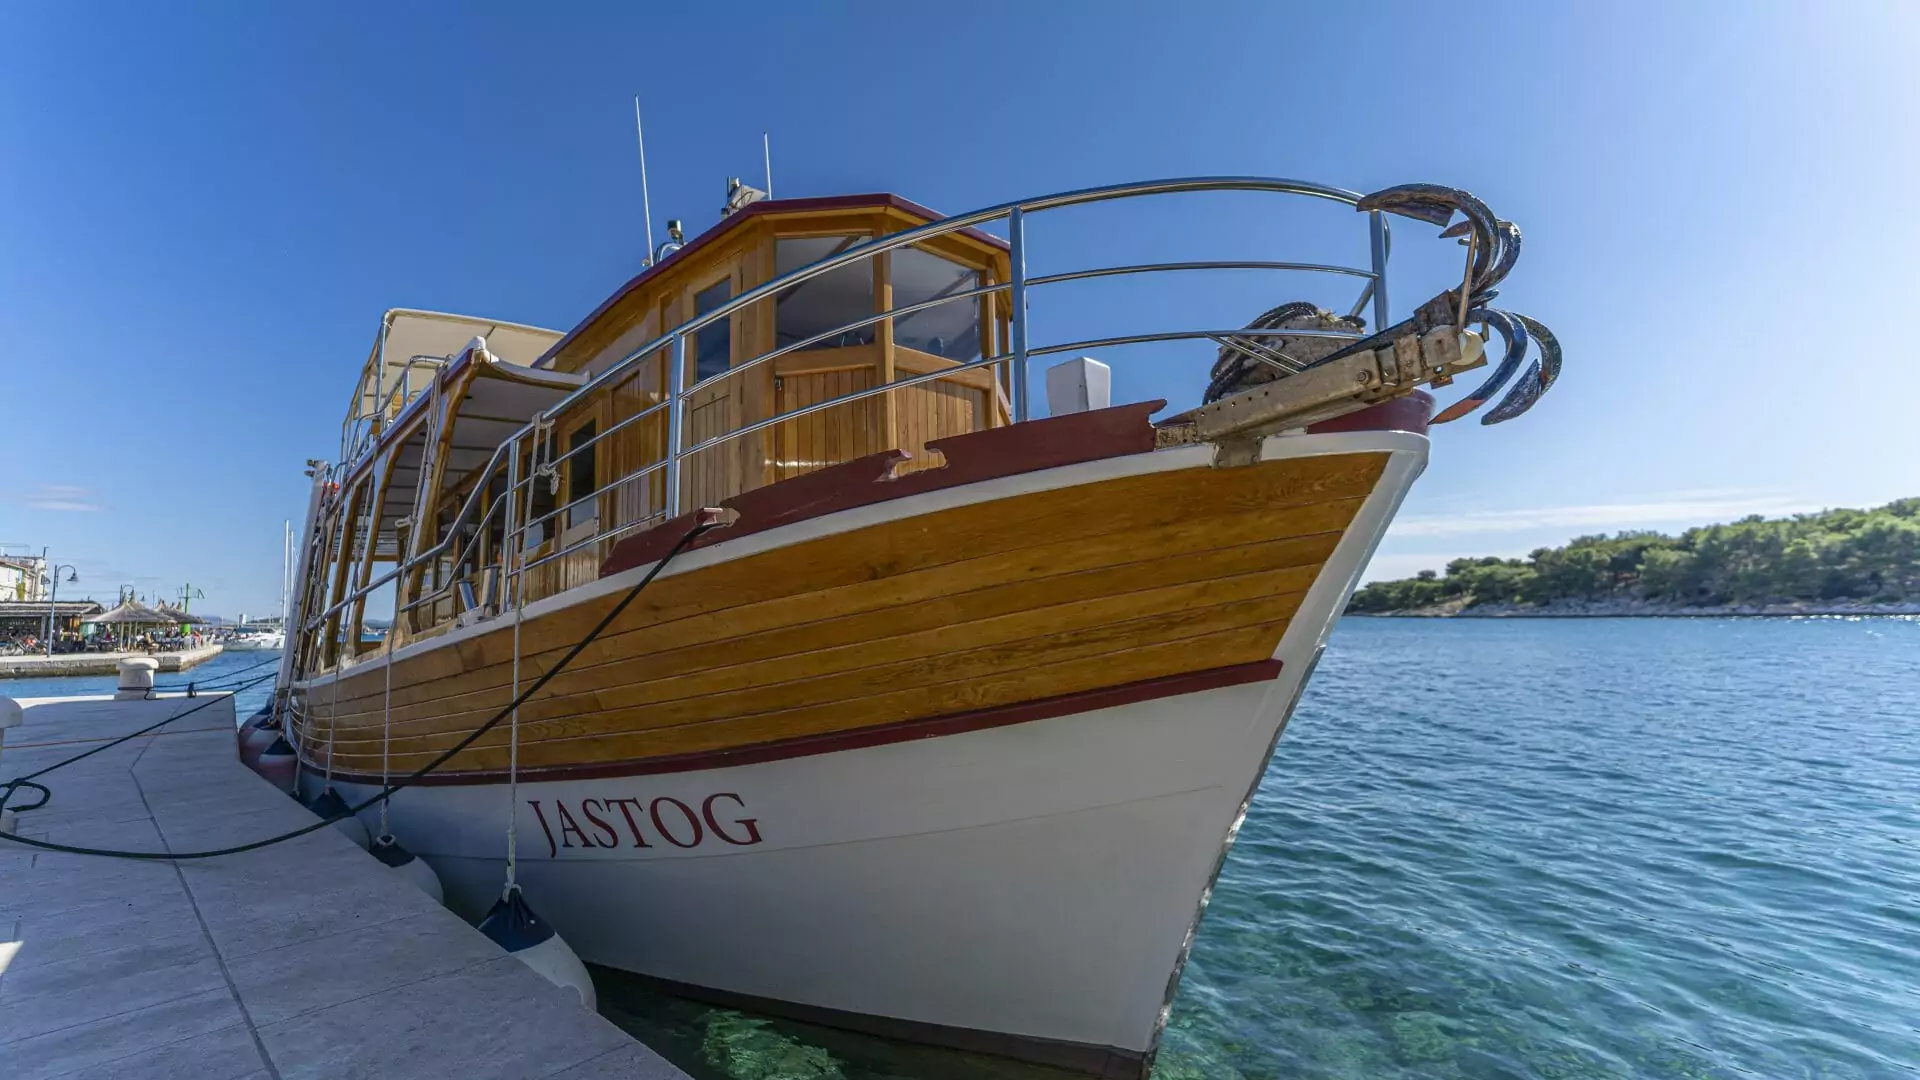 Sie gehört zum sommerlichen Ortsbild von Tribunj - die JASTOG- "unser" Ausflugsschiff!